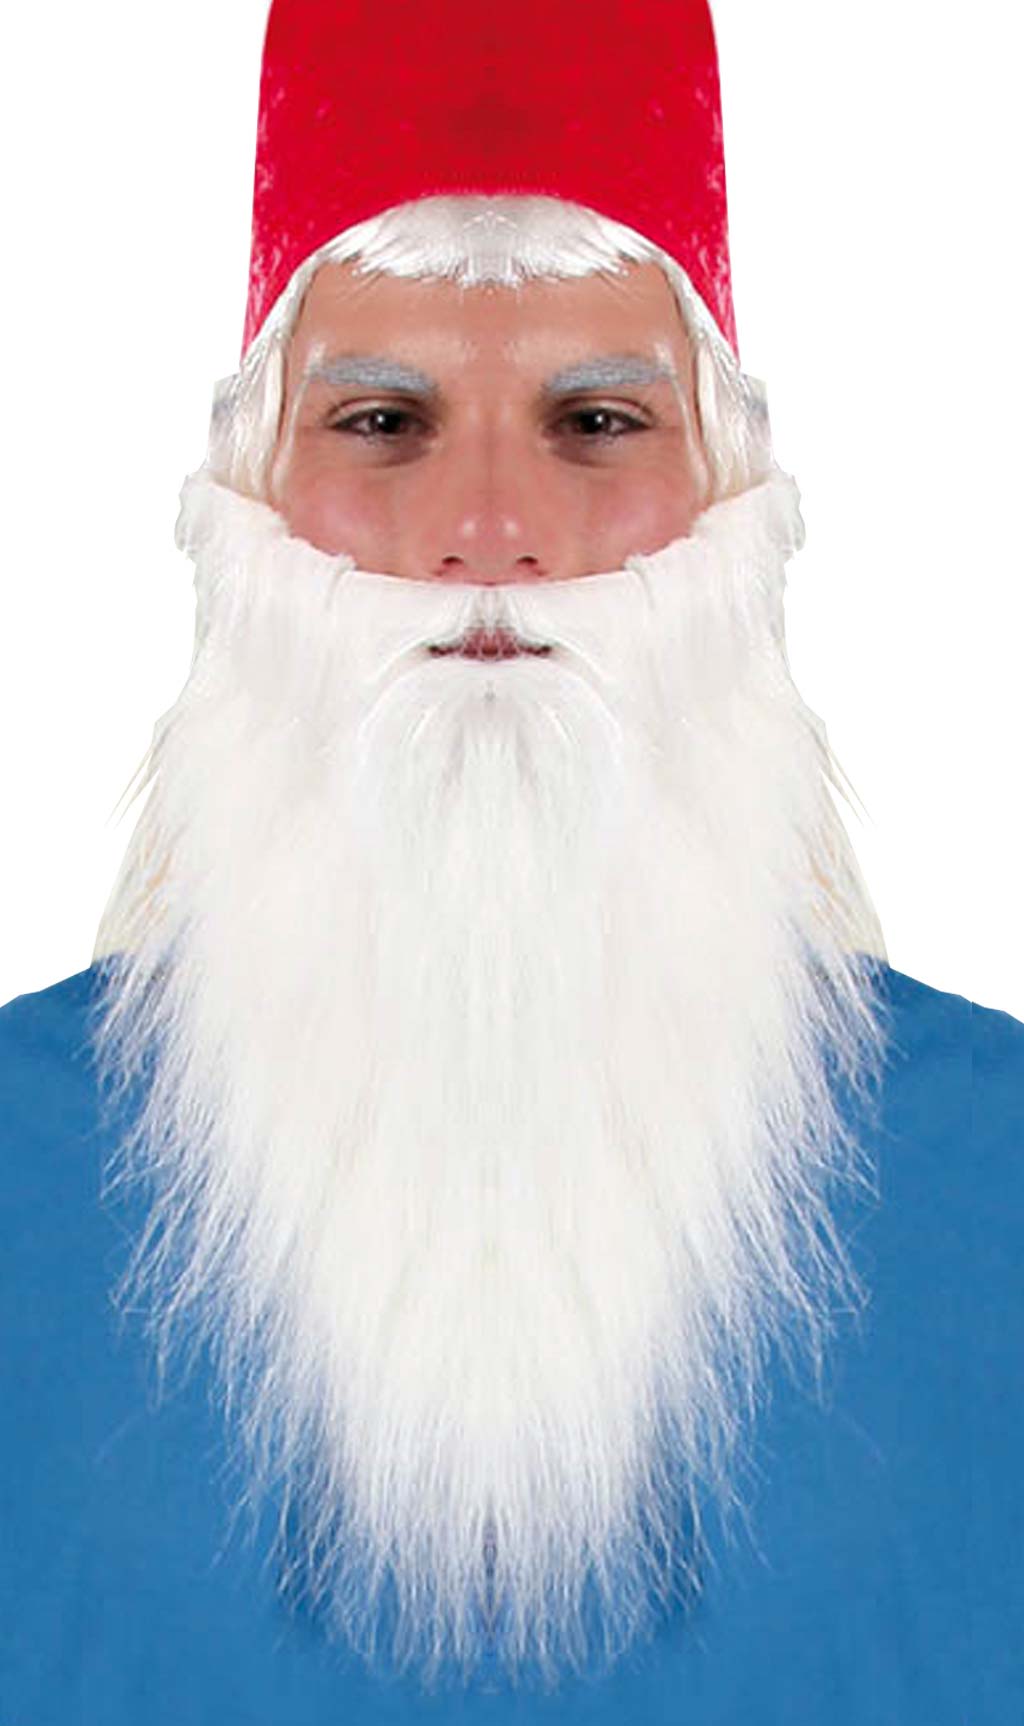 Uomo vestito da Babbo Natale con bianca lunga barba finta, stando